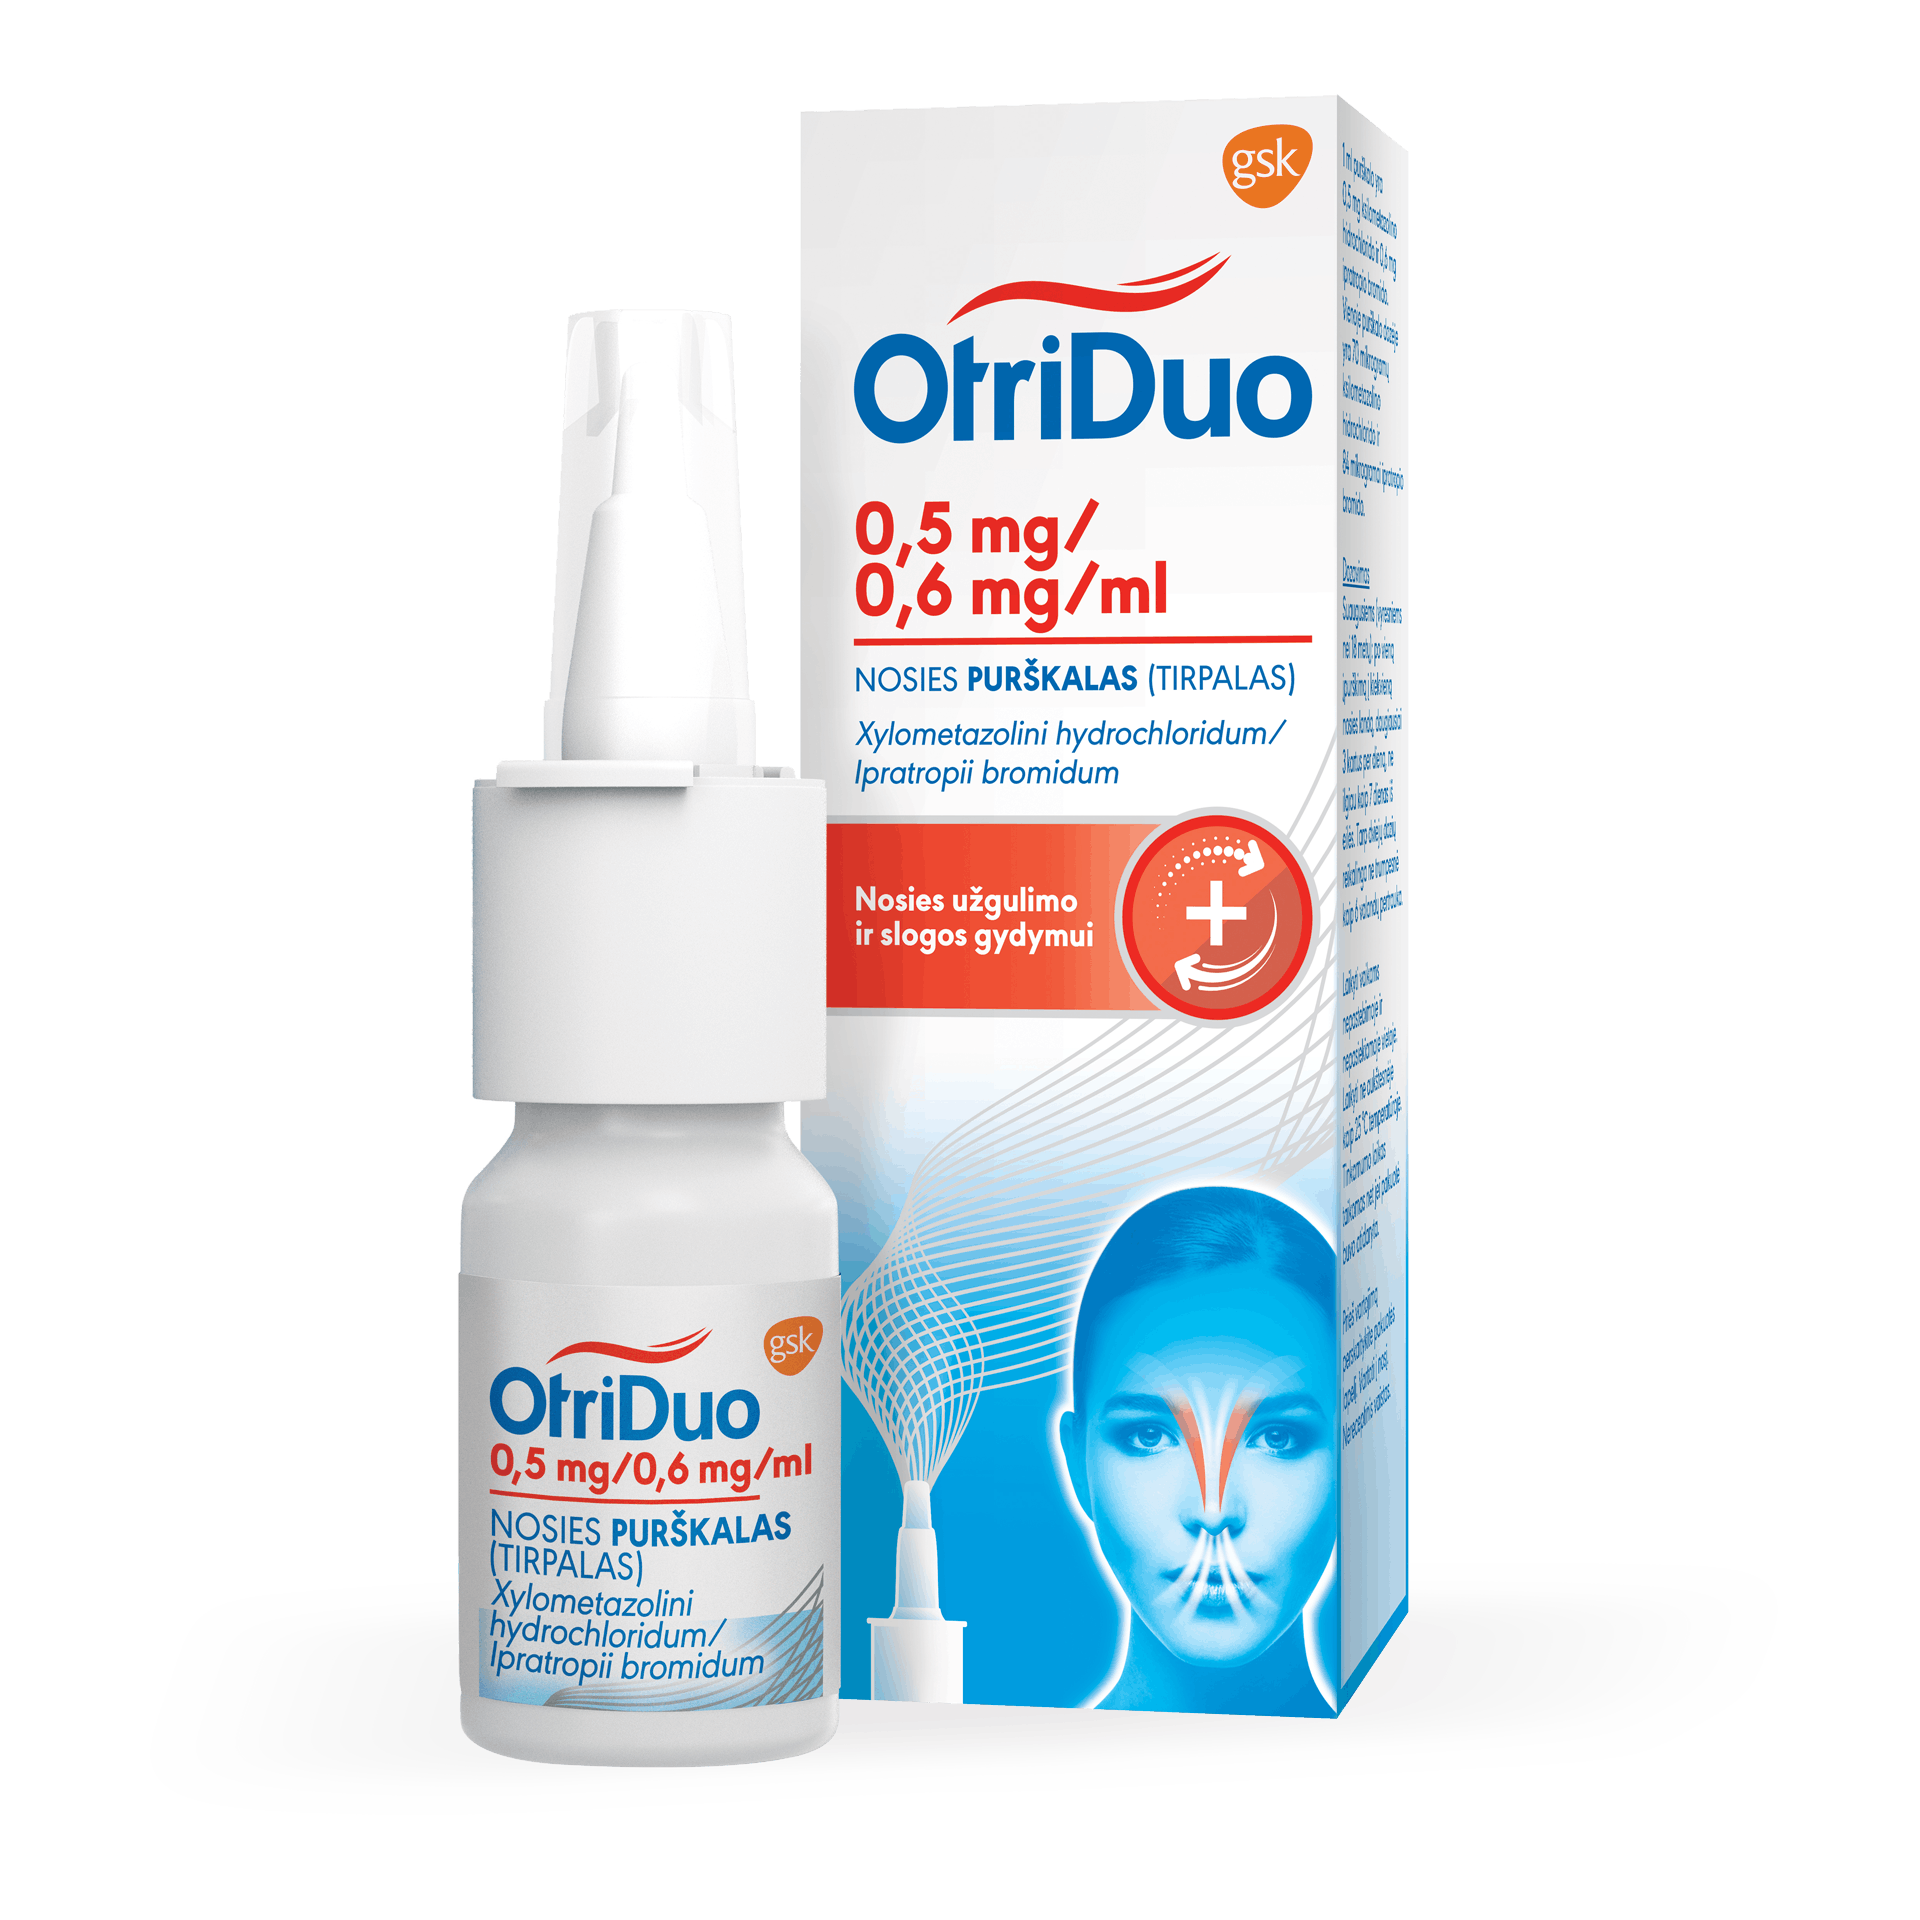 OtriDuo 0,5 mg/0,6 mg/ml nosies purškalas, tirpalas